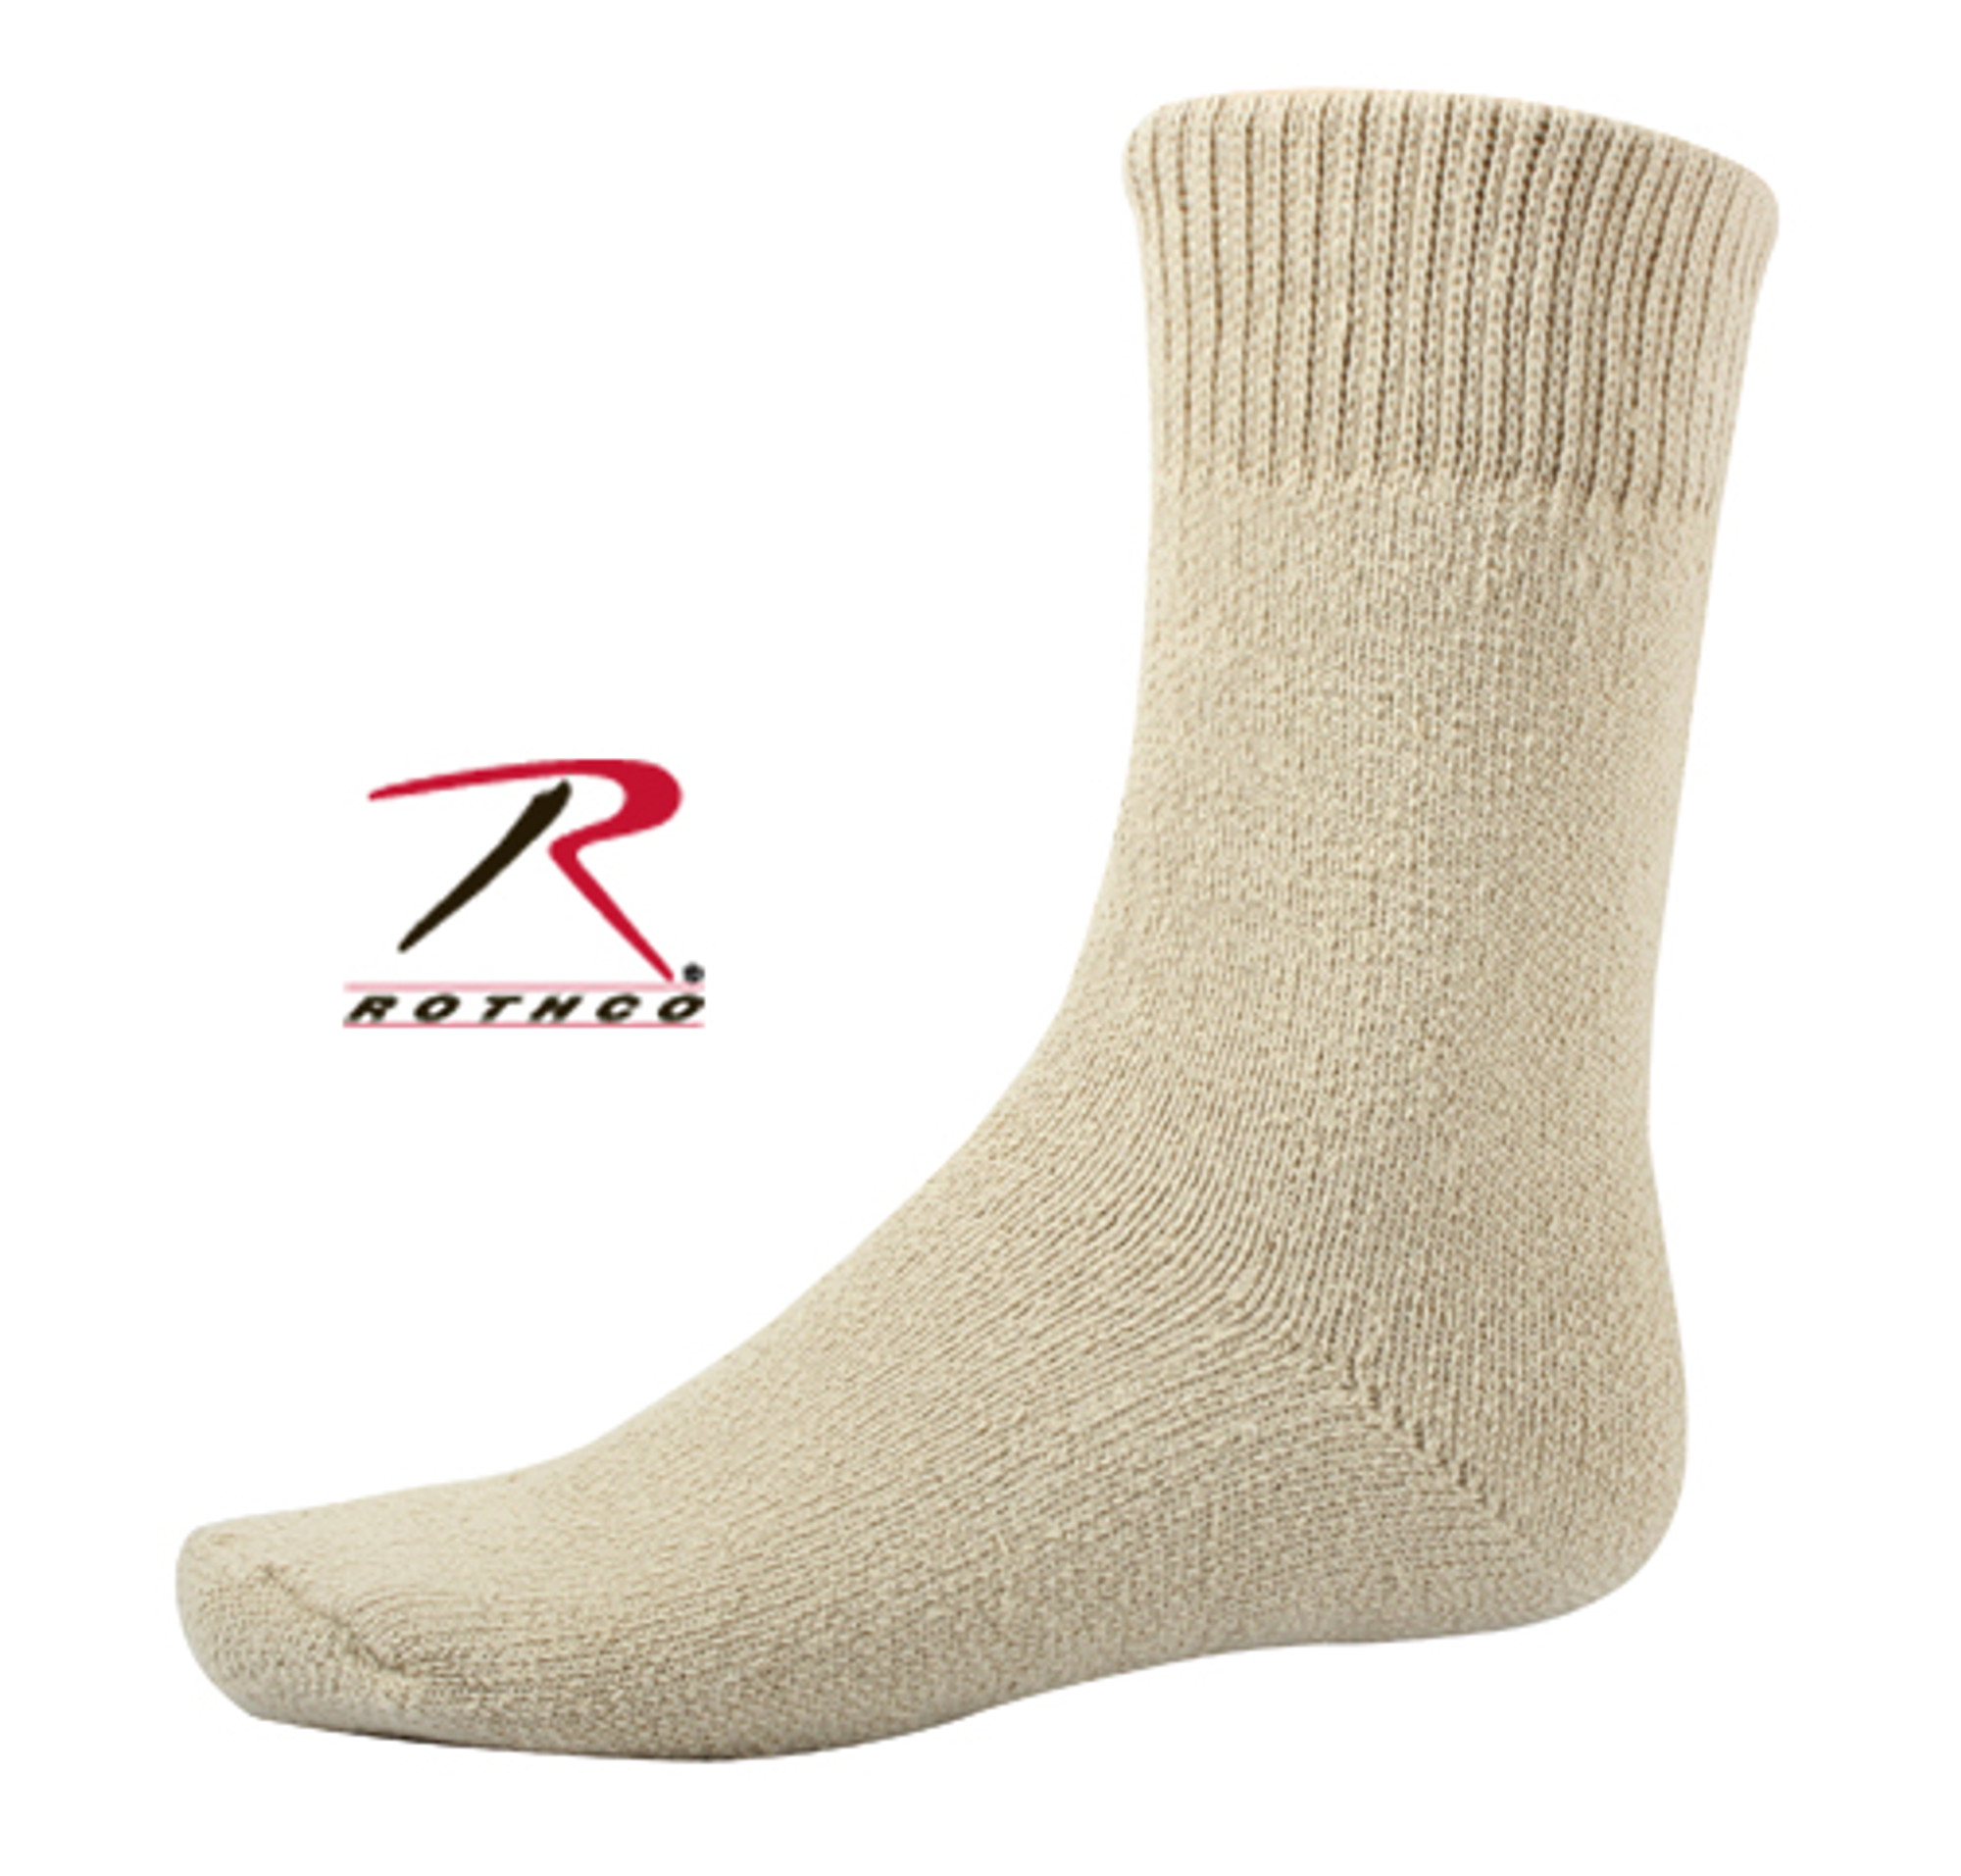 Rothco Thermal Boot Socks - Khaki